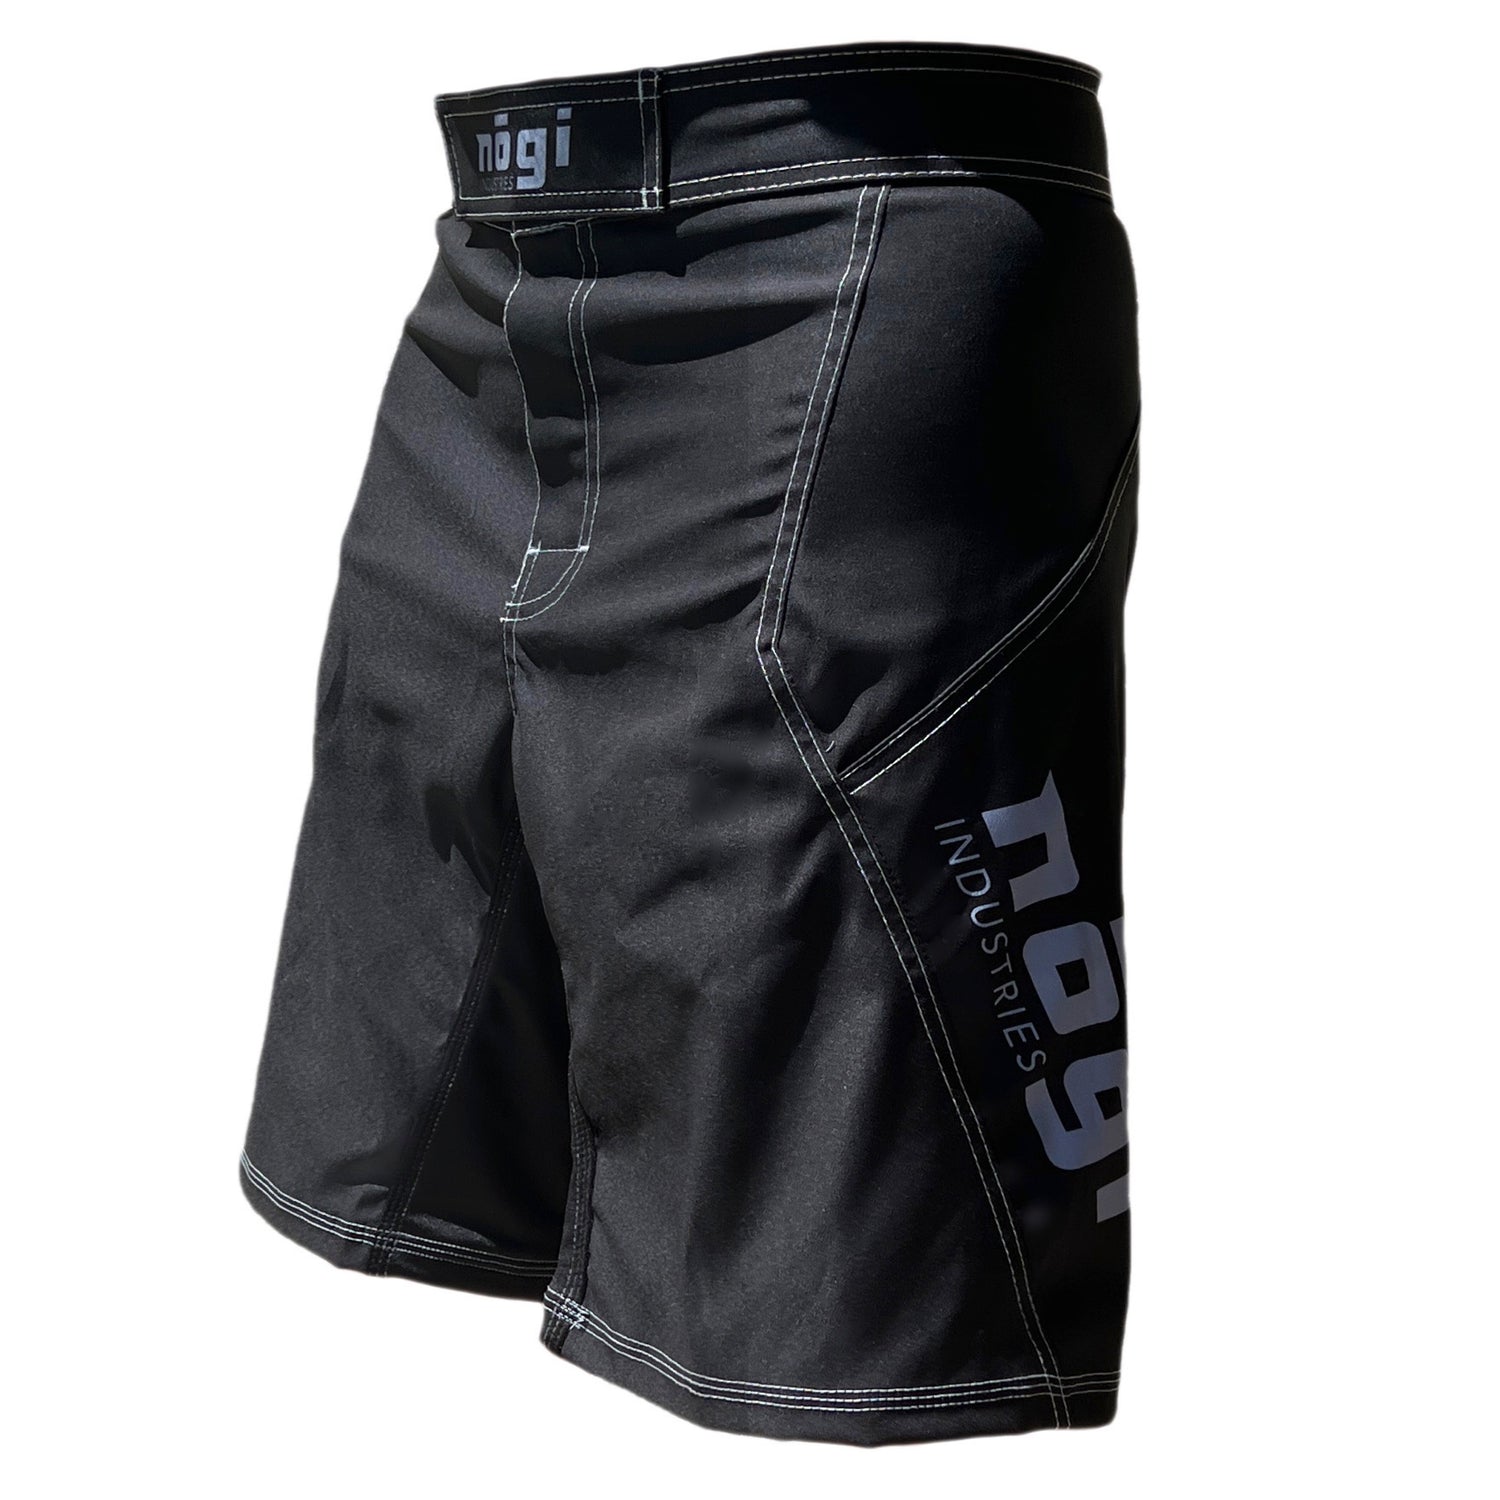 Pantalones cortos de lucha Phantom 4.0 - Classic Black de Nogi Industries - HECHO EN EE. UU.